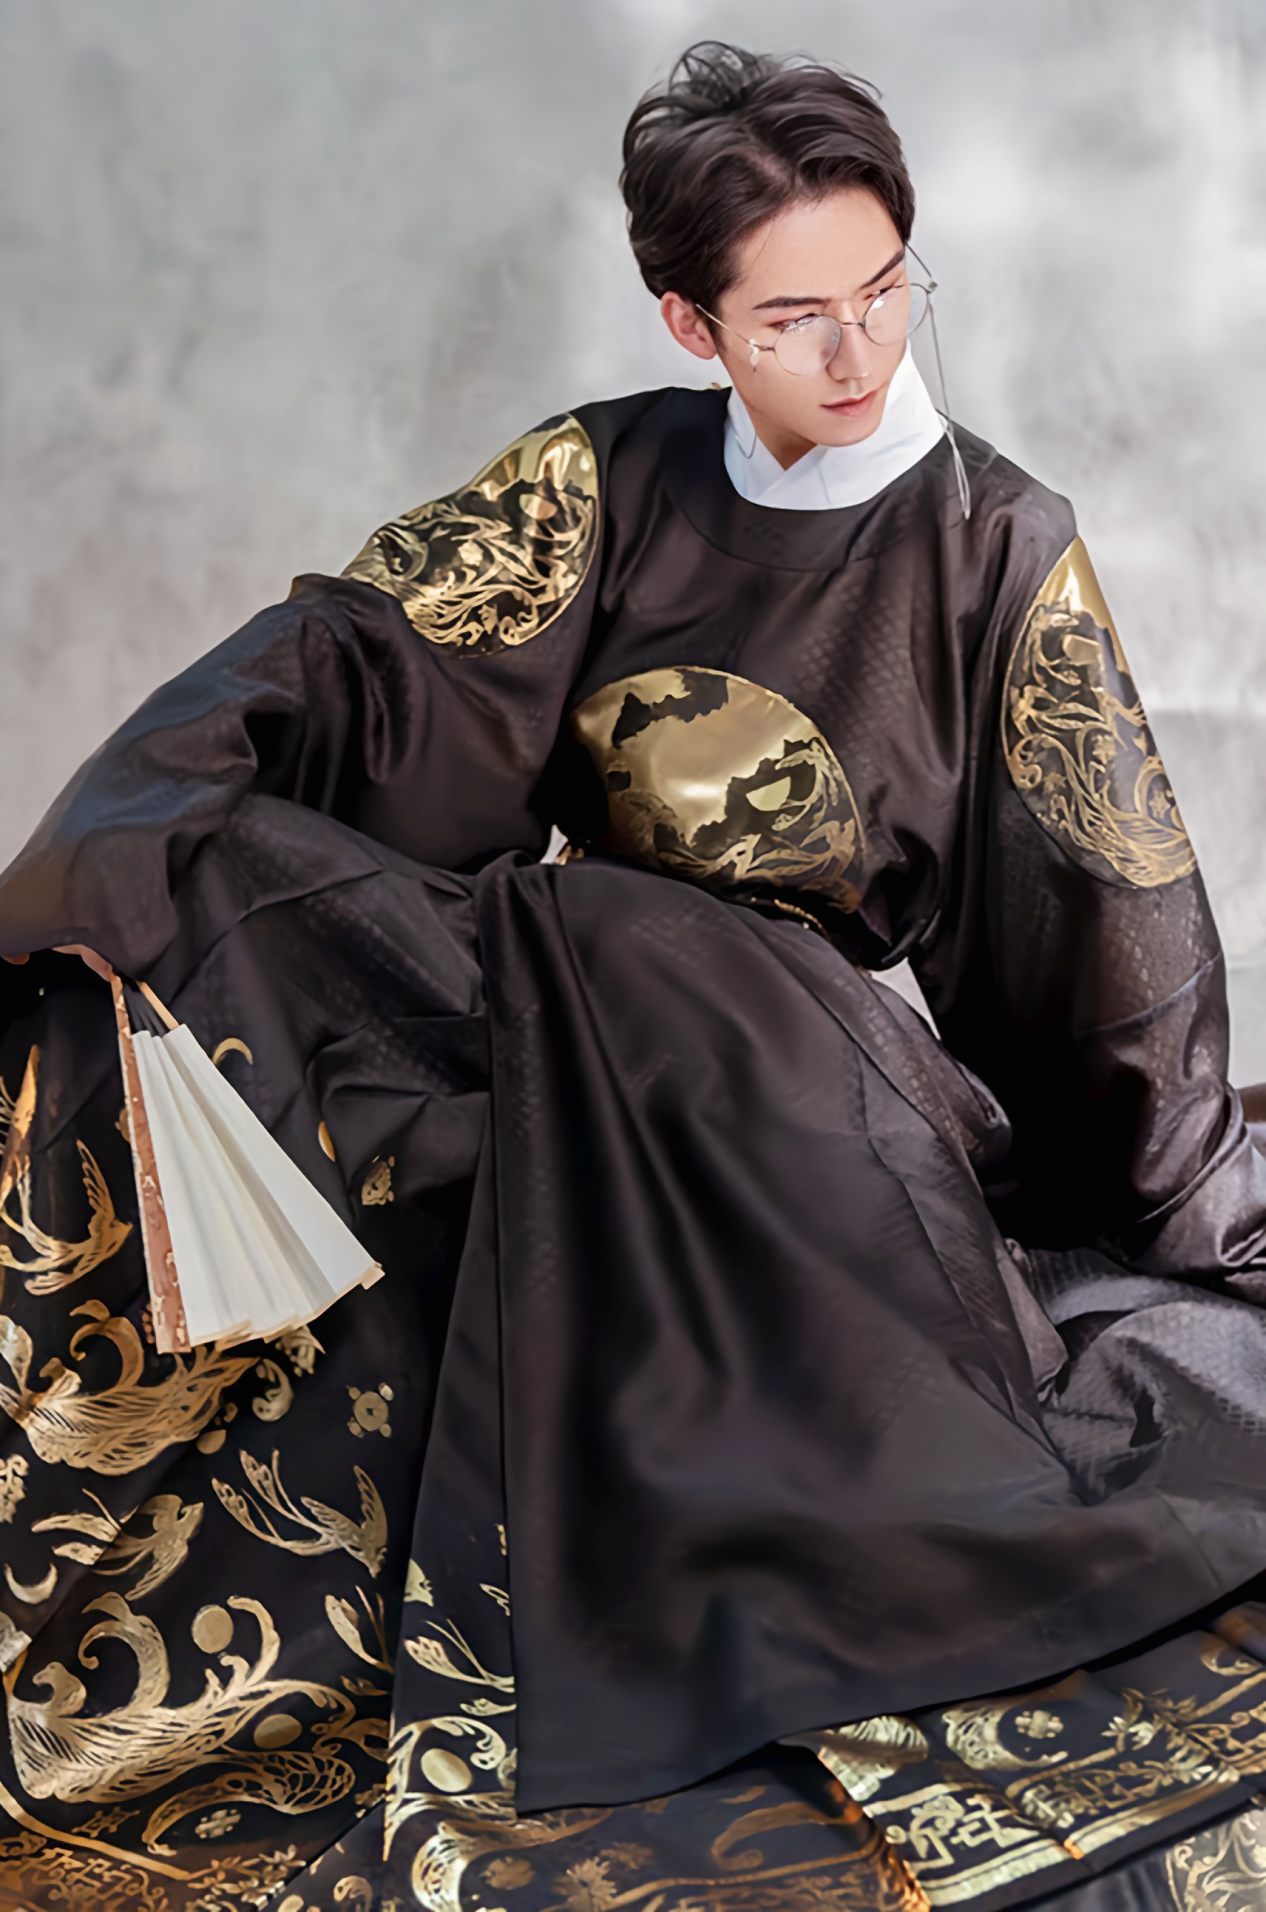 汉代男子服饰的特点图片